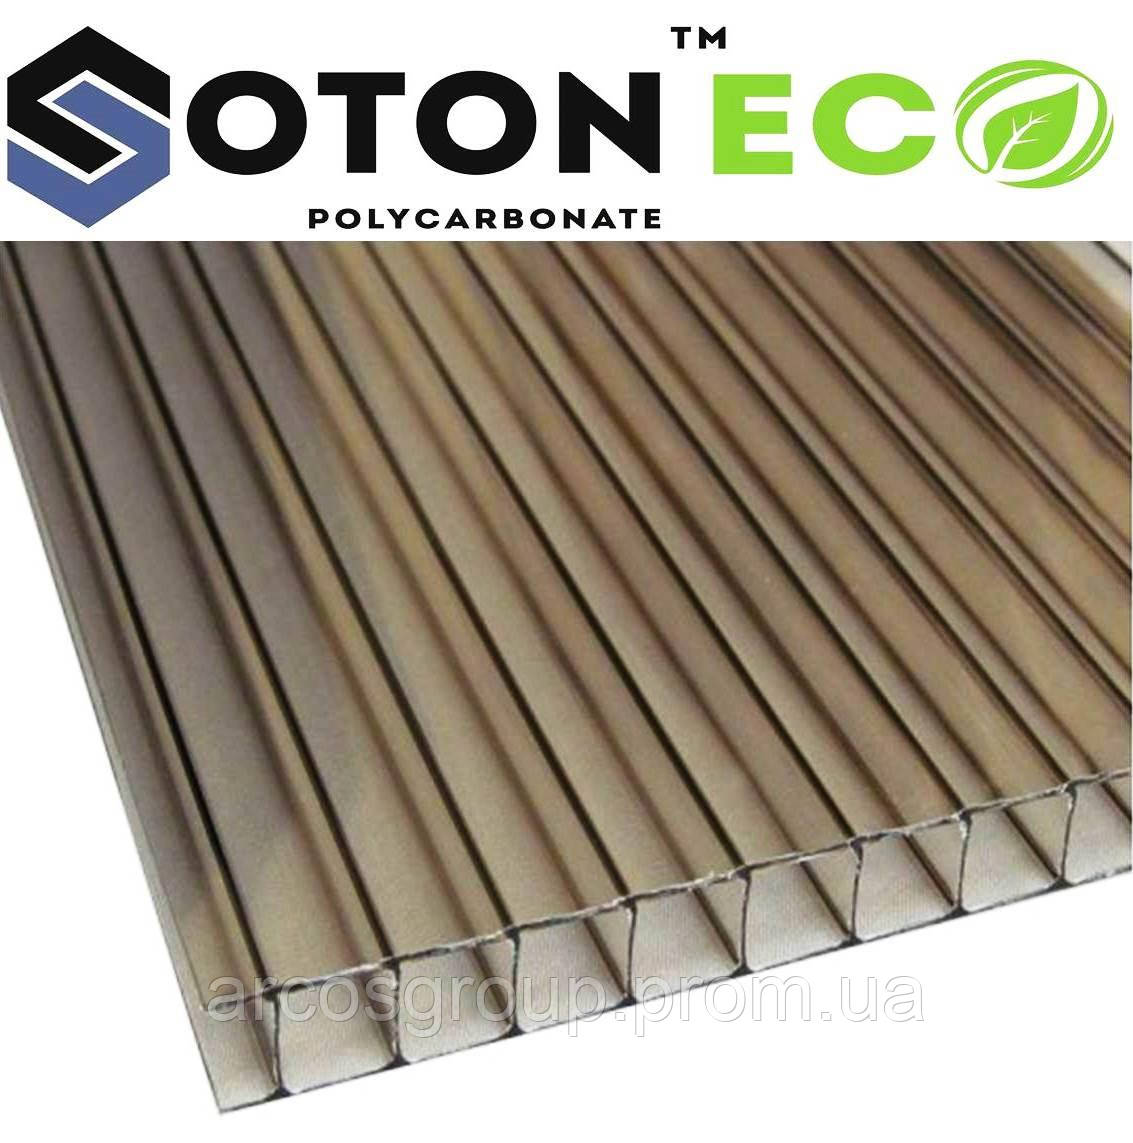 Сотовый поликарбонат SOTON ECO 4 мм (бронзовый)